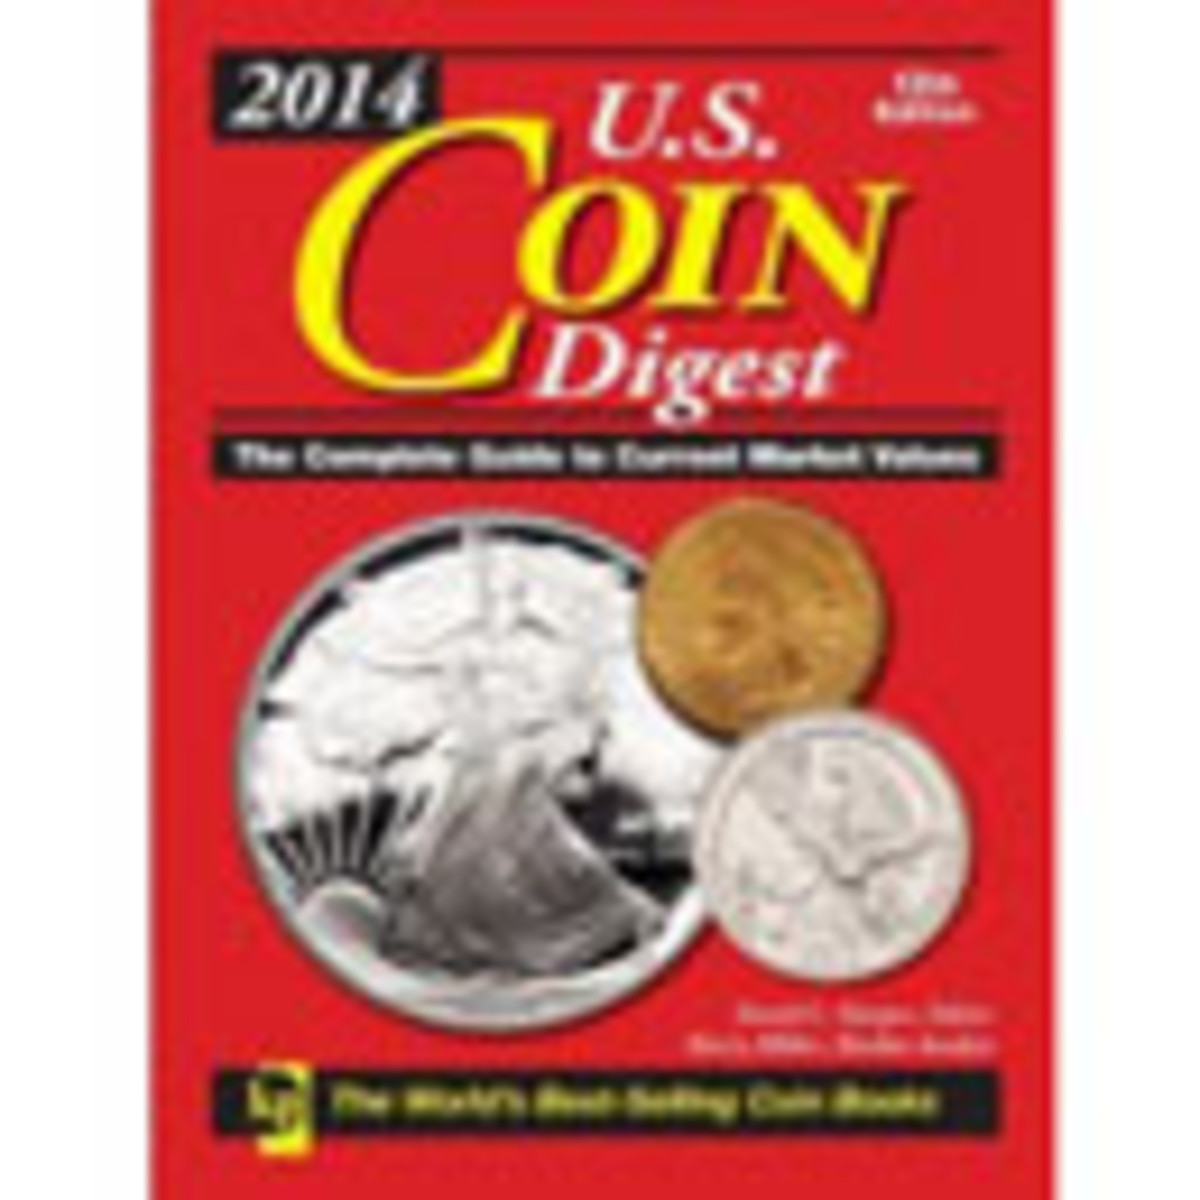 2014 U.S. Coin Digest